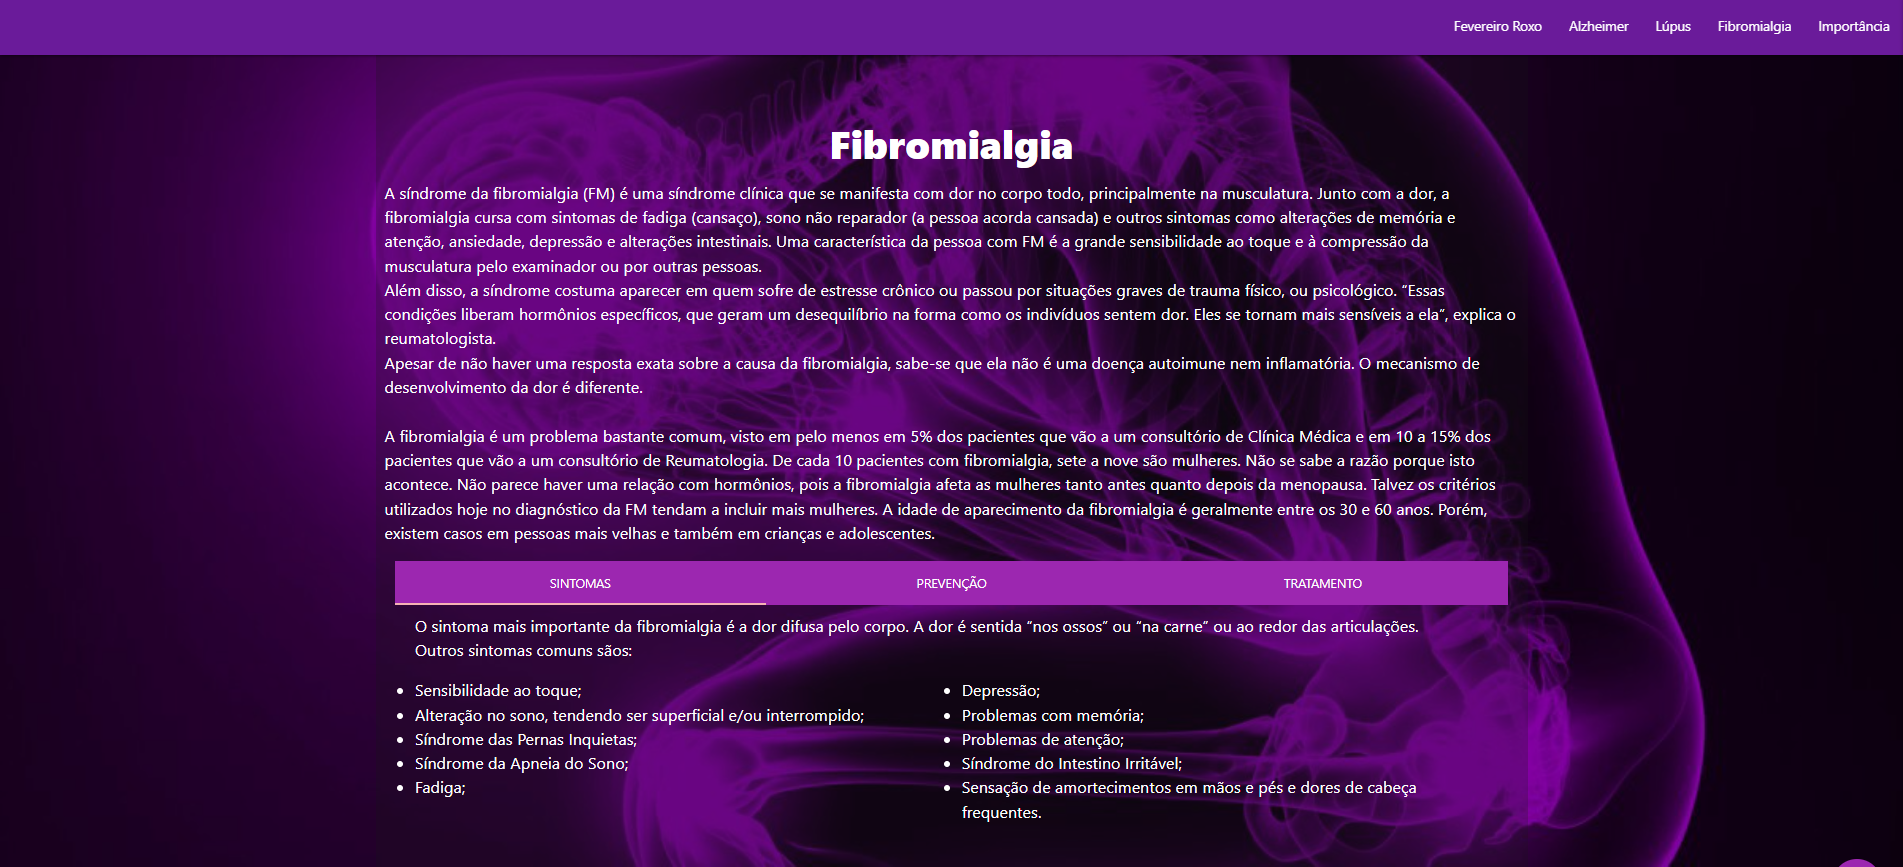  Continuação do site social, contendo informações sobre a síndrome de Fibromialgia